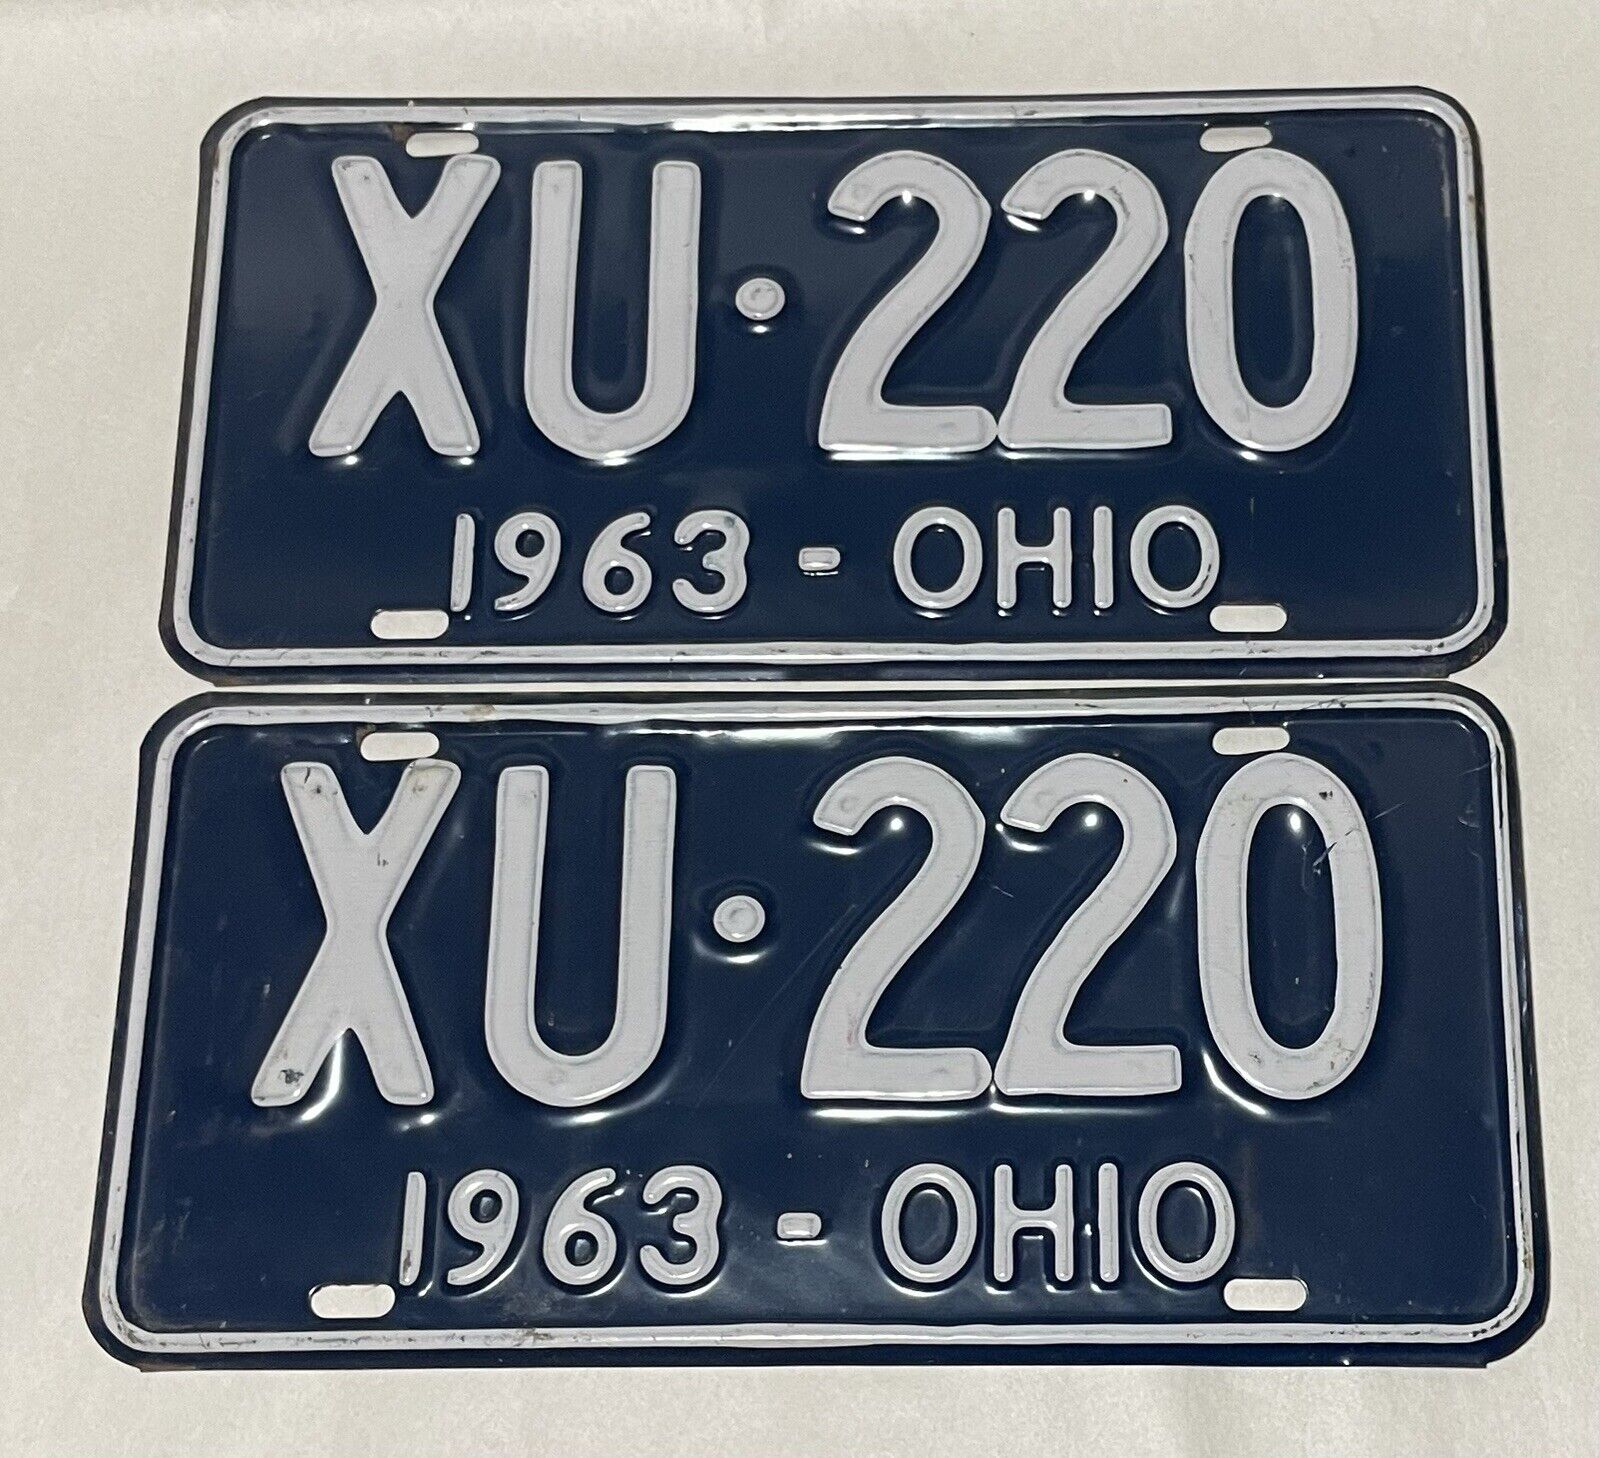 1963 Ohio Blue White  License Plates Pair XU220 Original - Nice Patina VTG